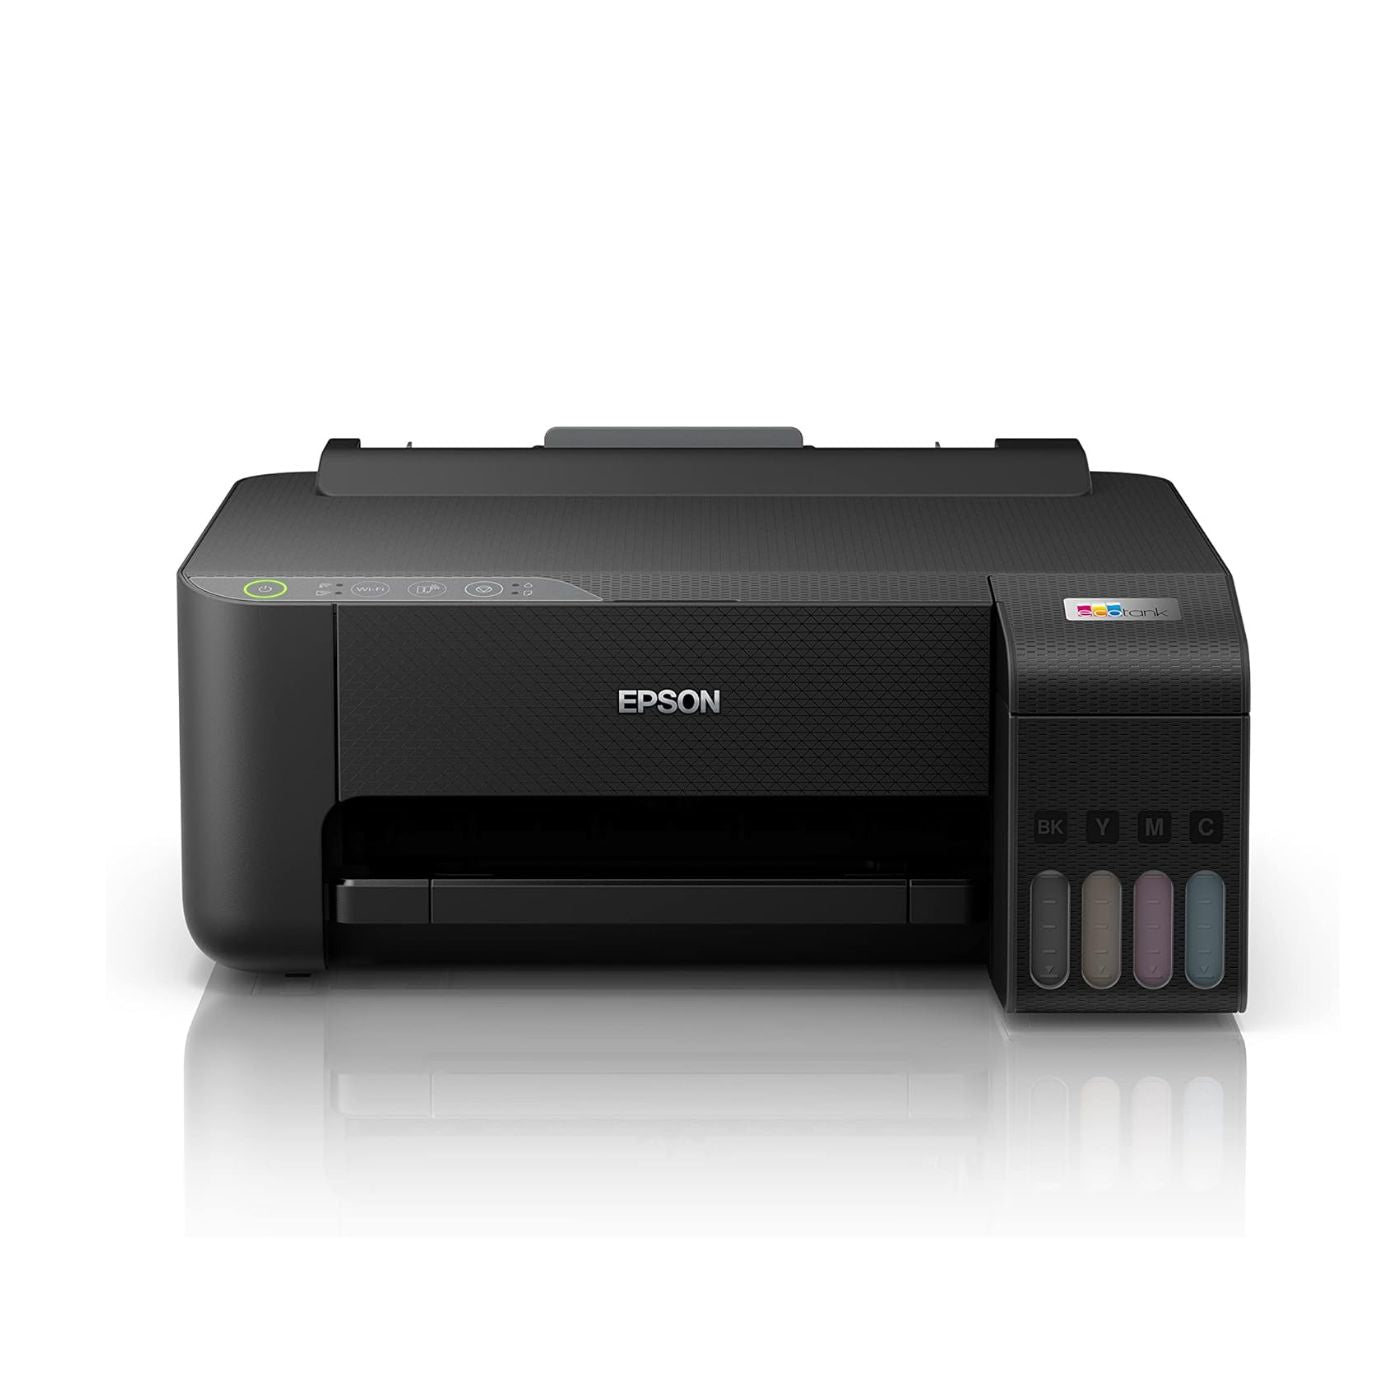 EPSON EcoTank Wireless Printer A4